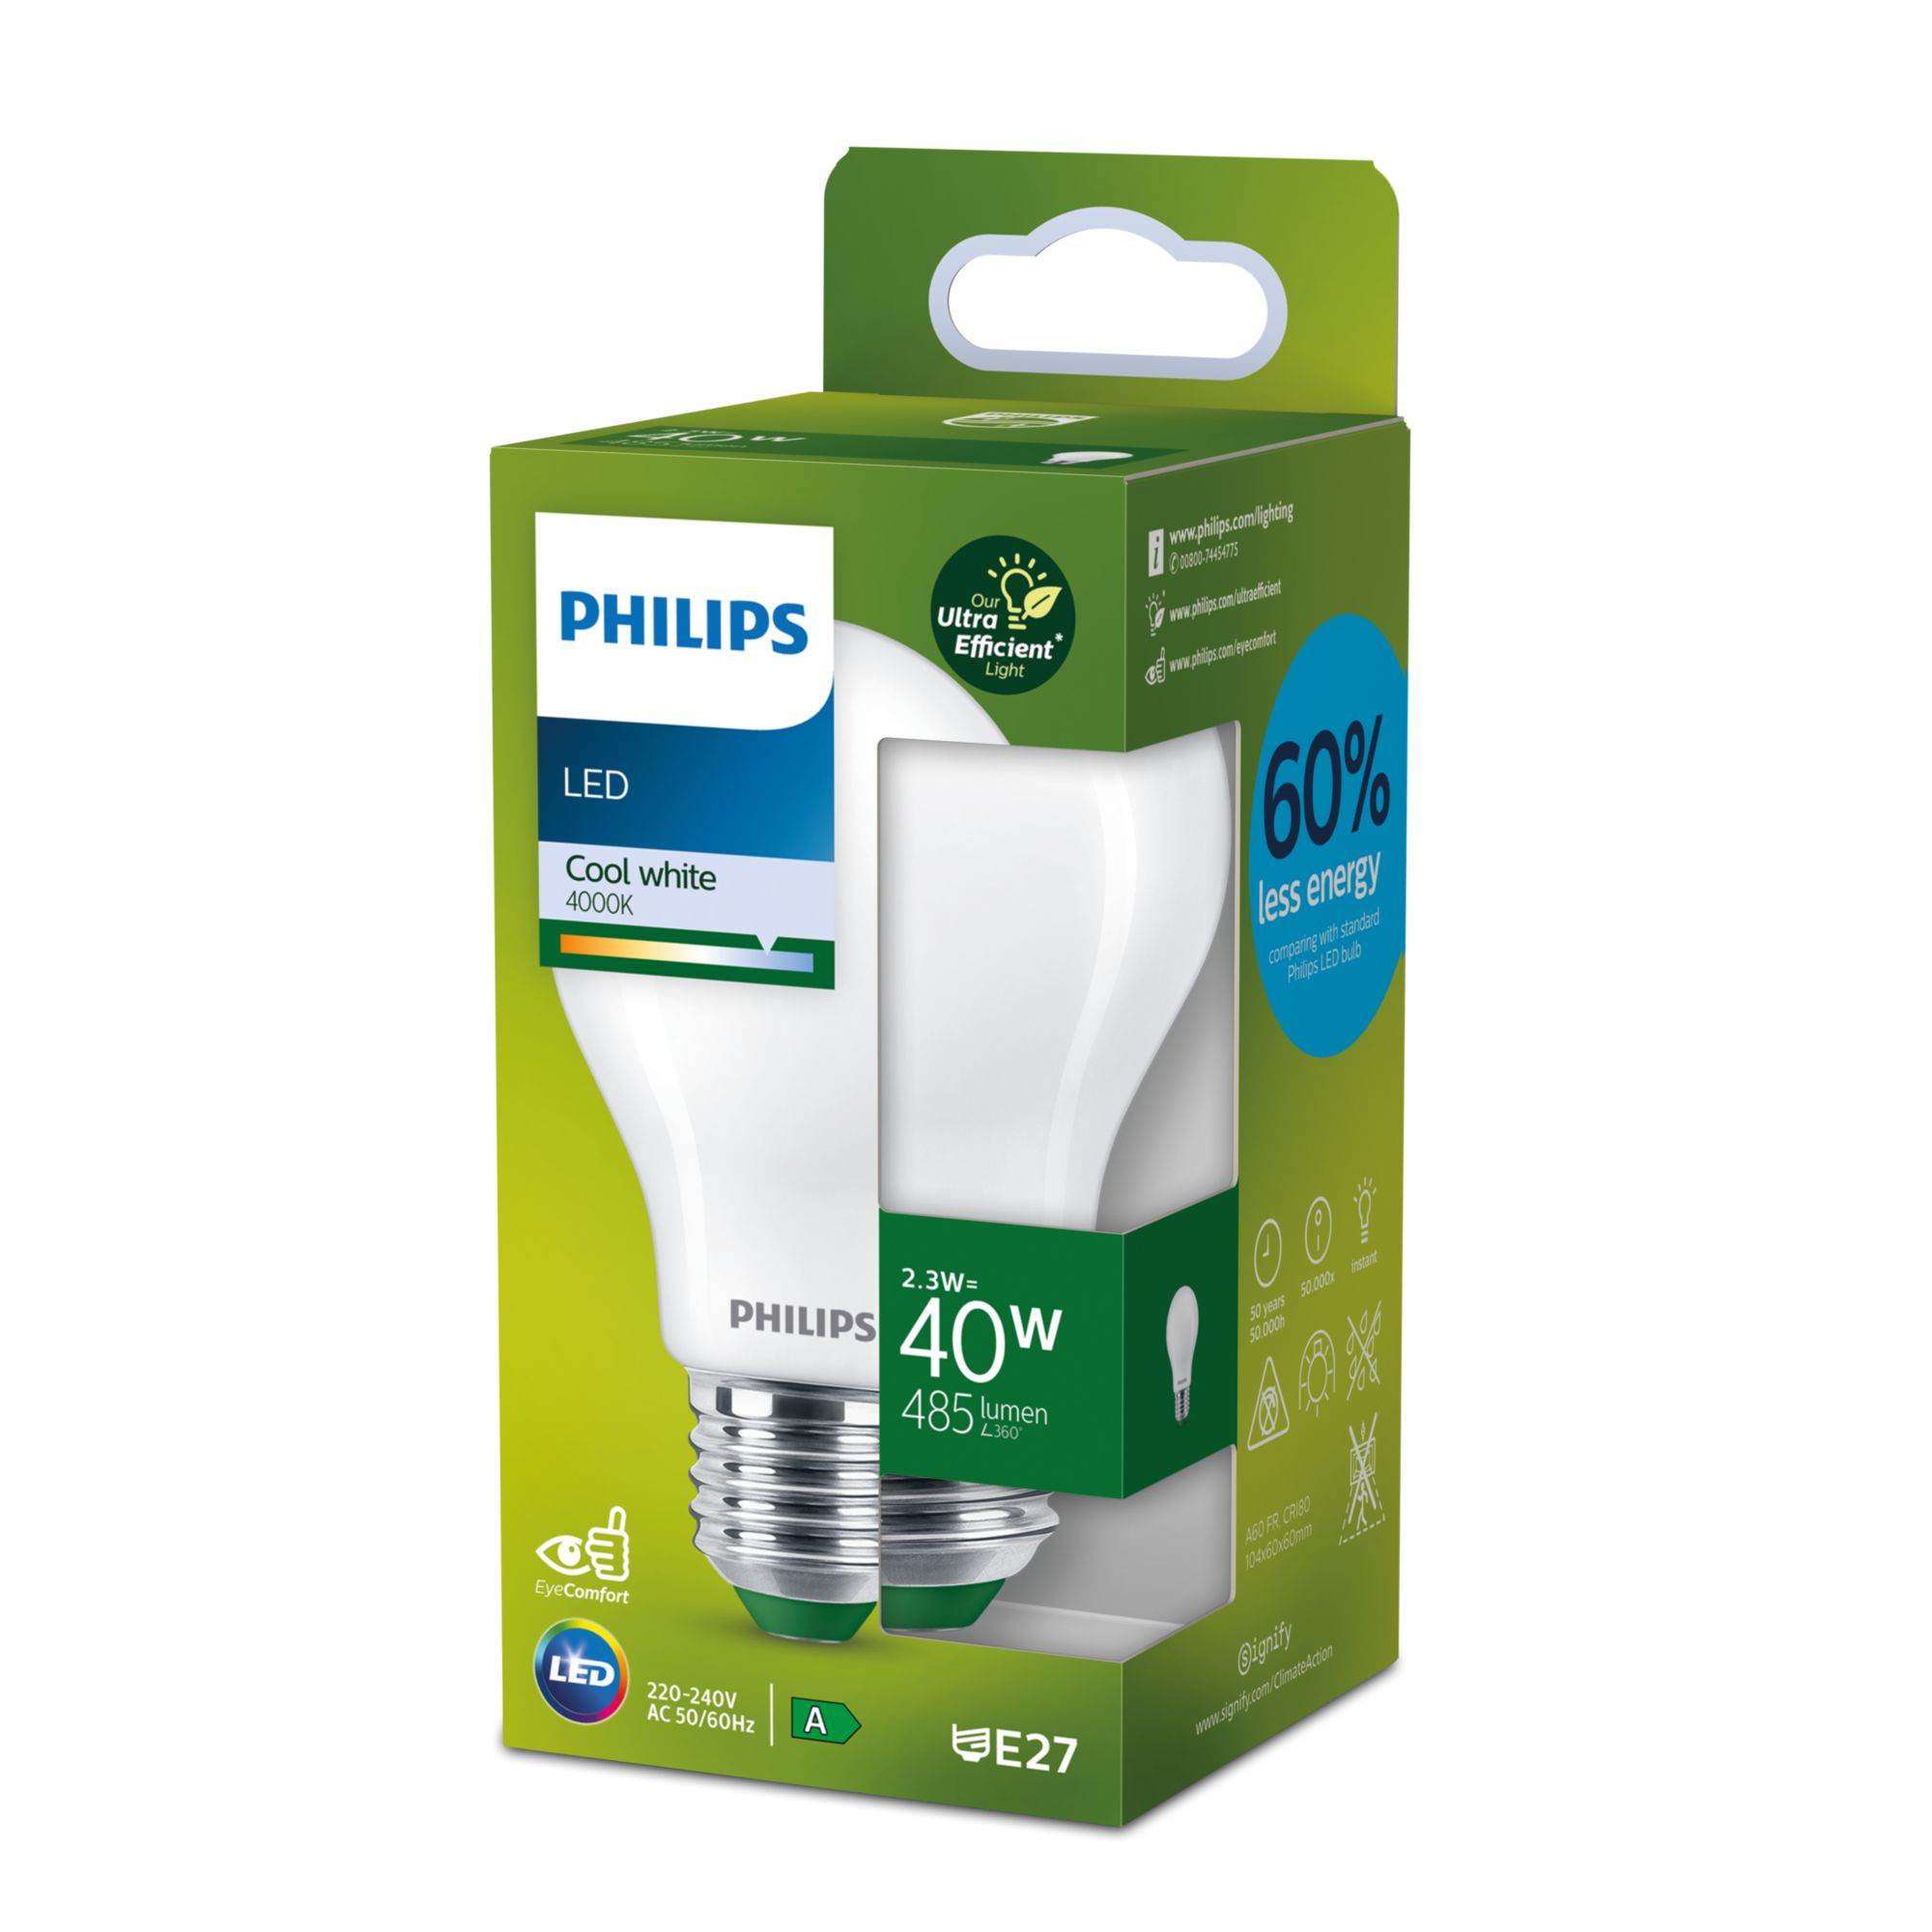 Philips Classic LED-A-Label Lampe 40W E27 matt neutralweiß cd4f8c1c667e1116ef4f046adef56d44